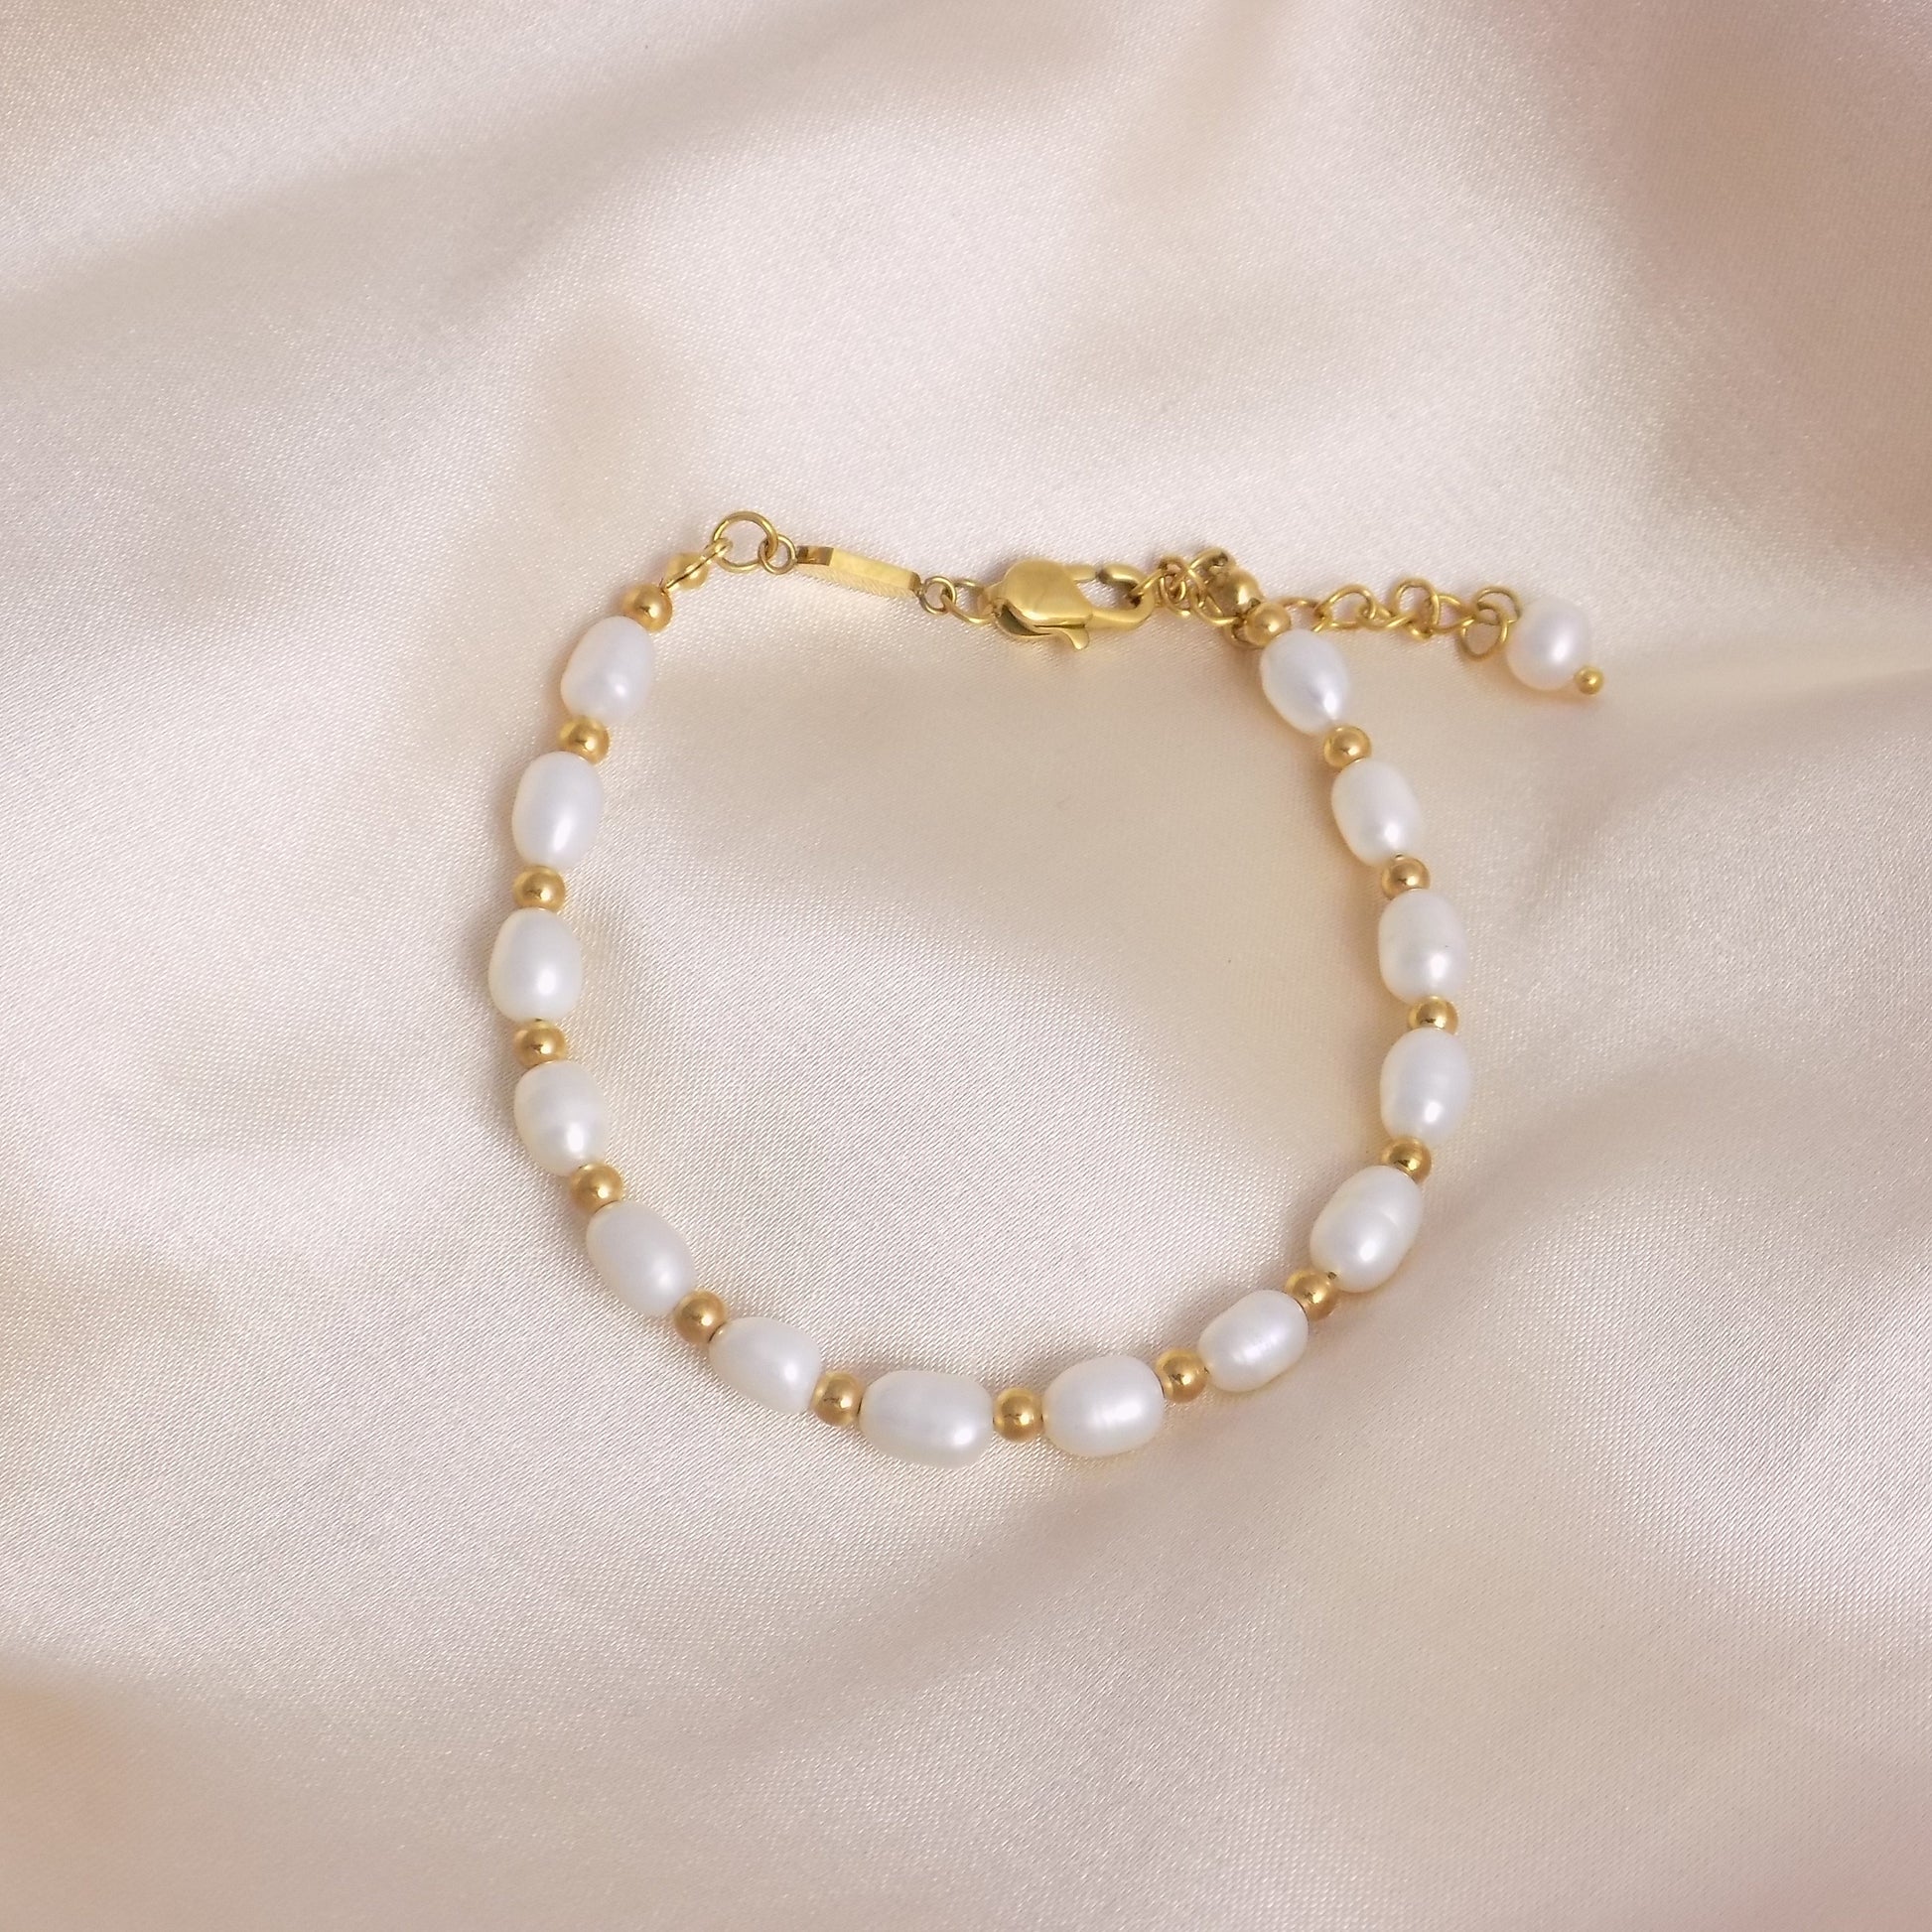 Freshwater Pearl Bracelet Gold - Ruby Zoisite Bracelet - Christmas Gift For Her - M7-143